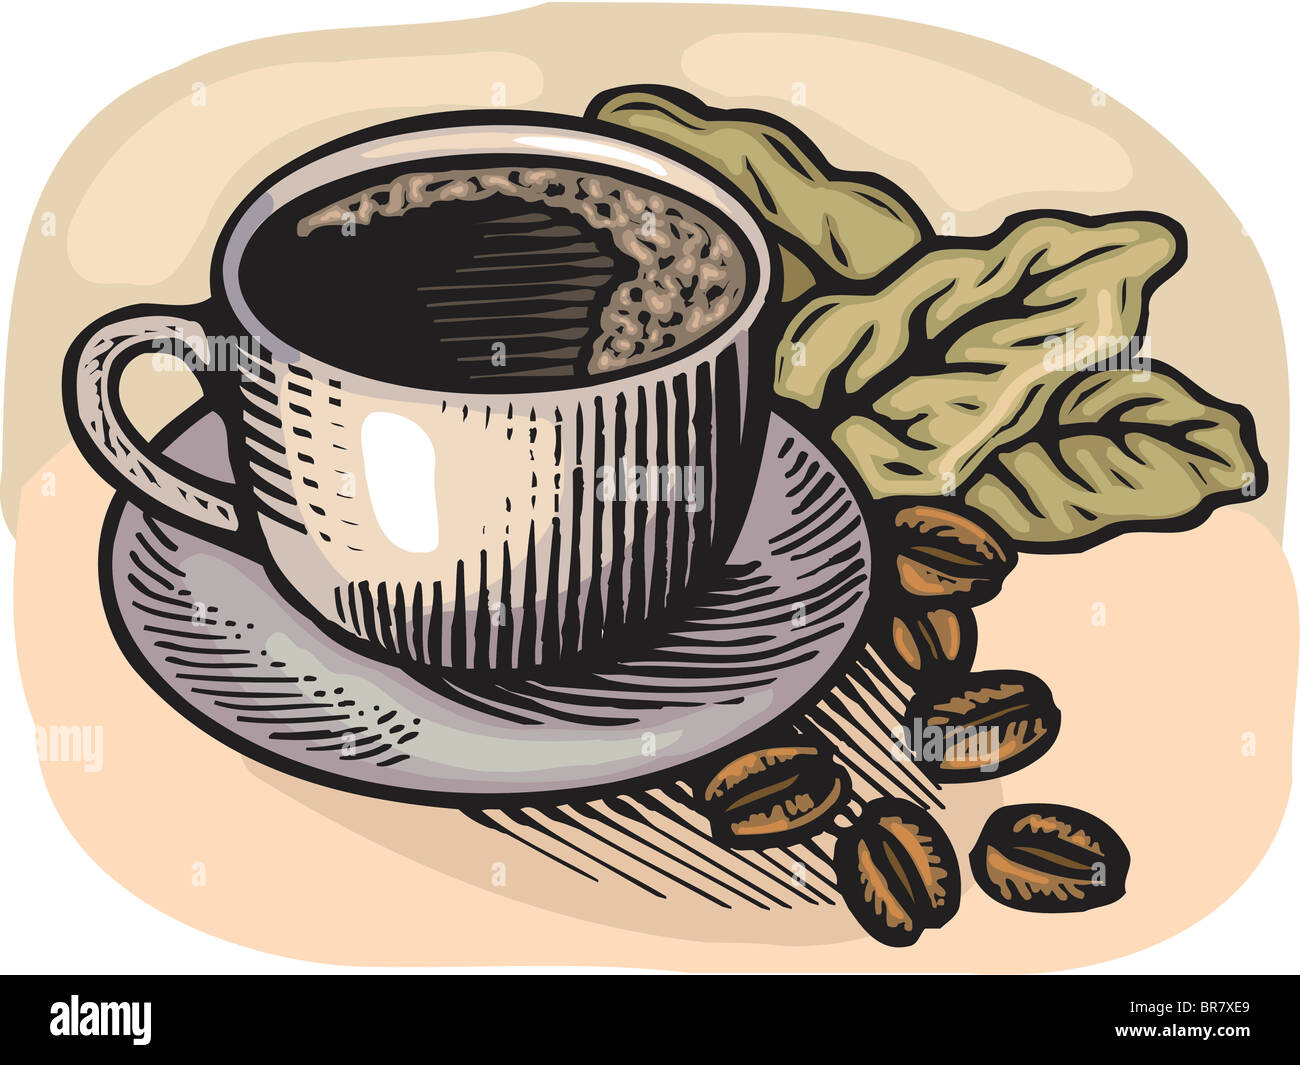 https://c8.alamy.com/compes/br7xe9/cartoon-ilustracion-de-una-taza-de-cafe-y-granos-de-cafe-br7xe9.jpg